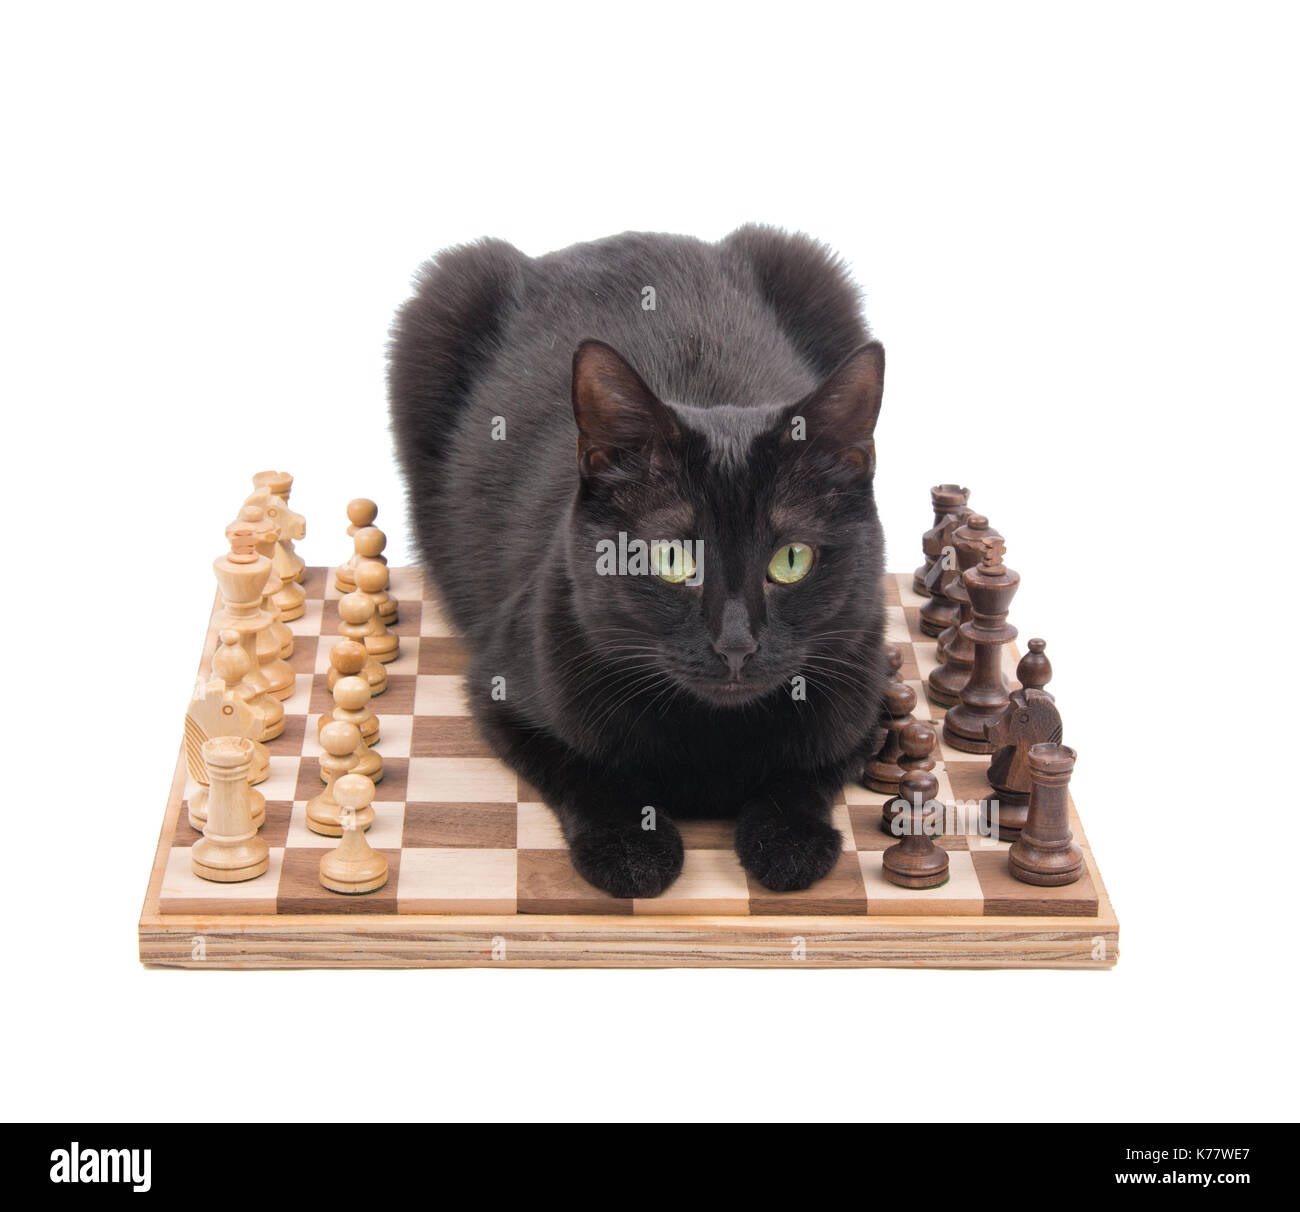 Chat noir couché au milieu d'une partie d'échecs, en regardant le spectateur, isolé sur blanc Banque D'Images